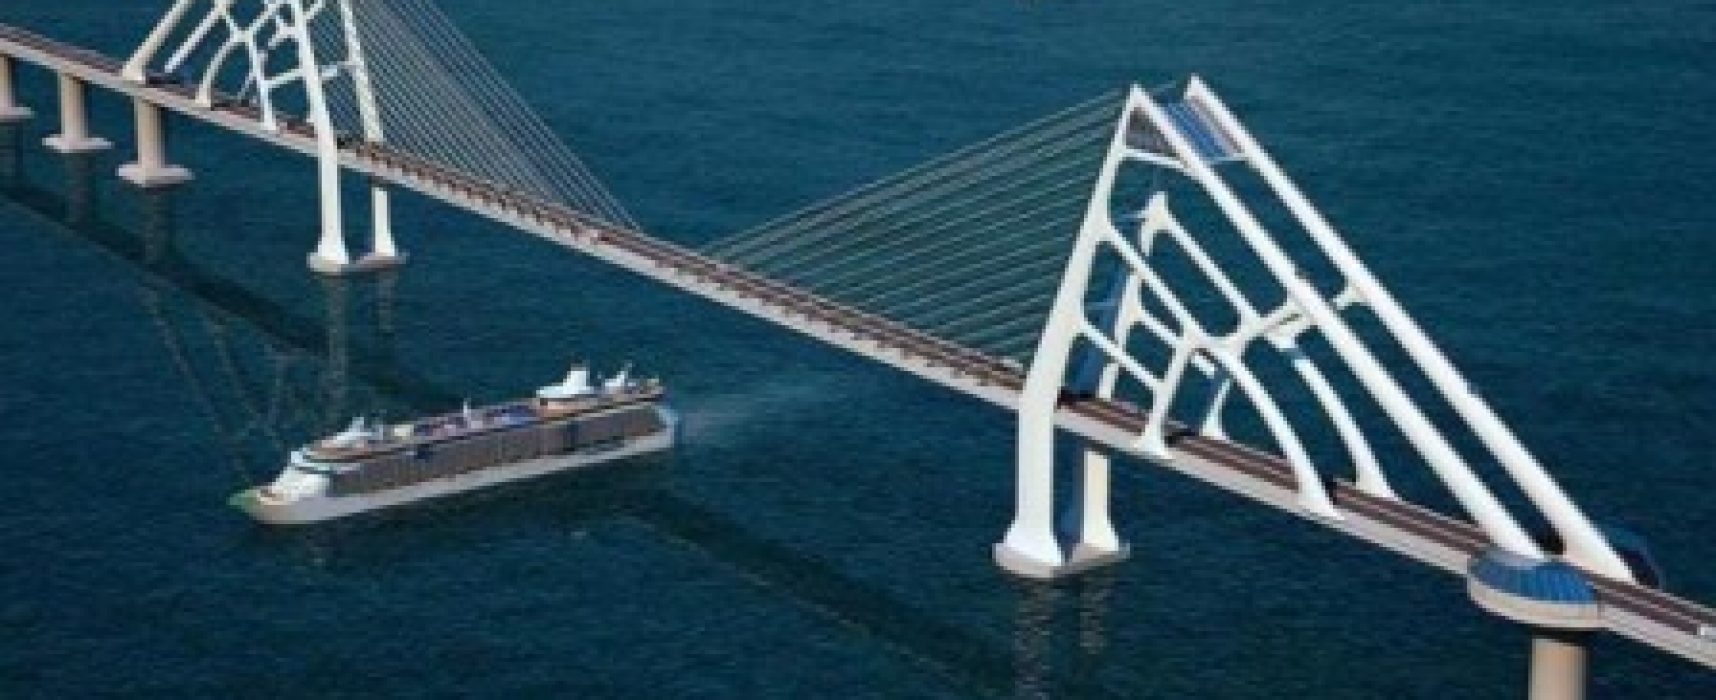 Leilão da ponte Salvador-Itaparica será realizada em abril do ano que vem